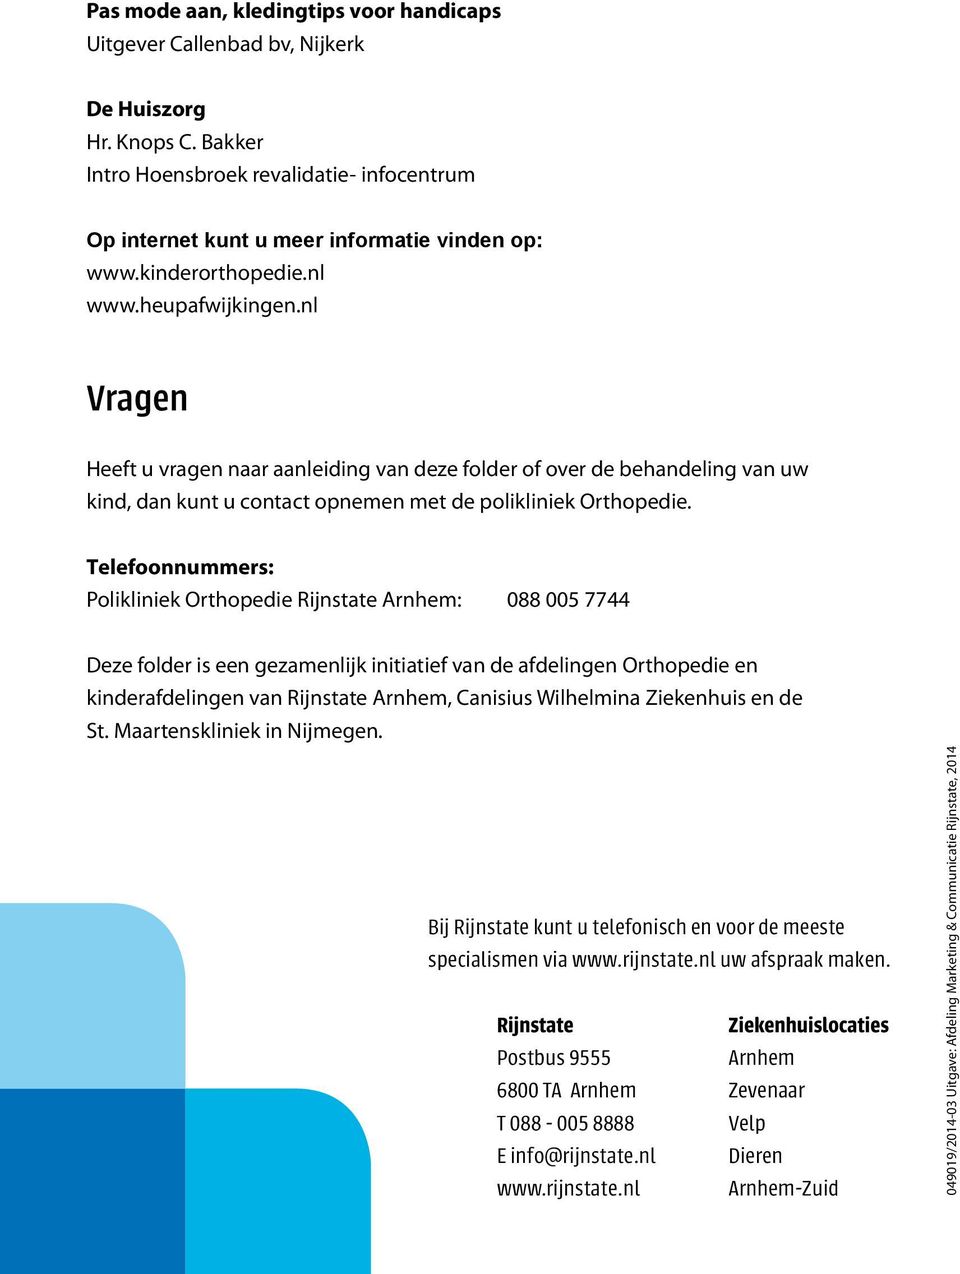 Telefoonnummers: Polikliniek Orthopedie Rijnstate Arnhem: 088 005 7744 Deze folder is een gezamenlijk initiatief van de afdelingen Orthopedie en kinderafdelingen van Rijnstate Arnhem, Canisius